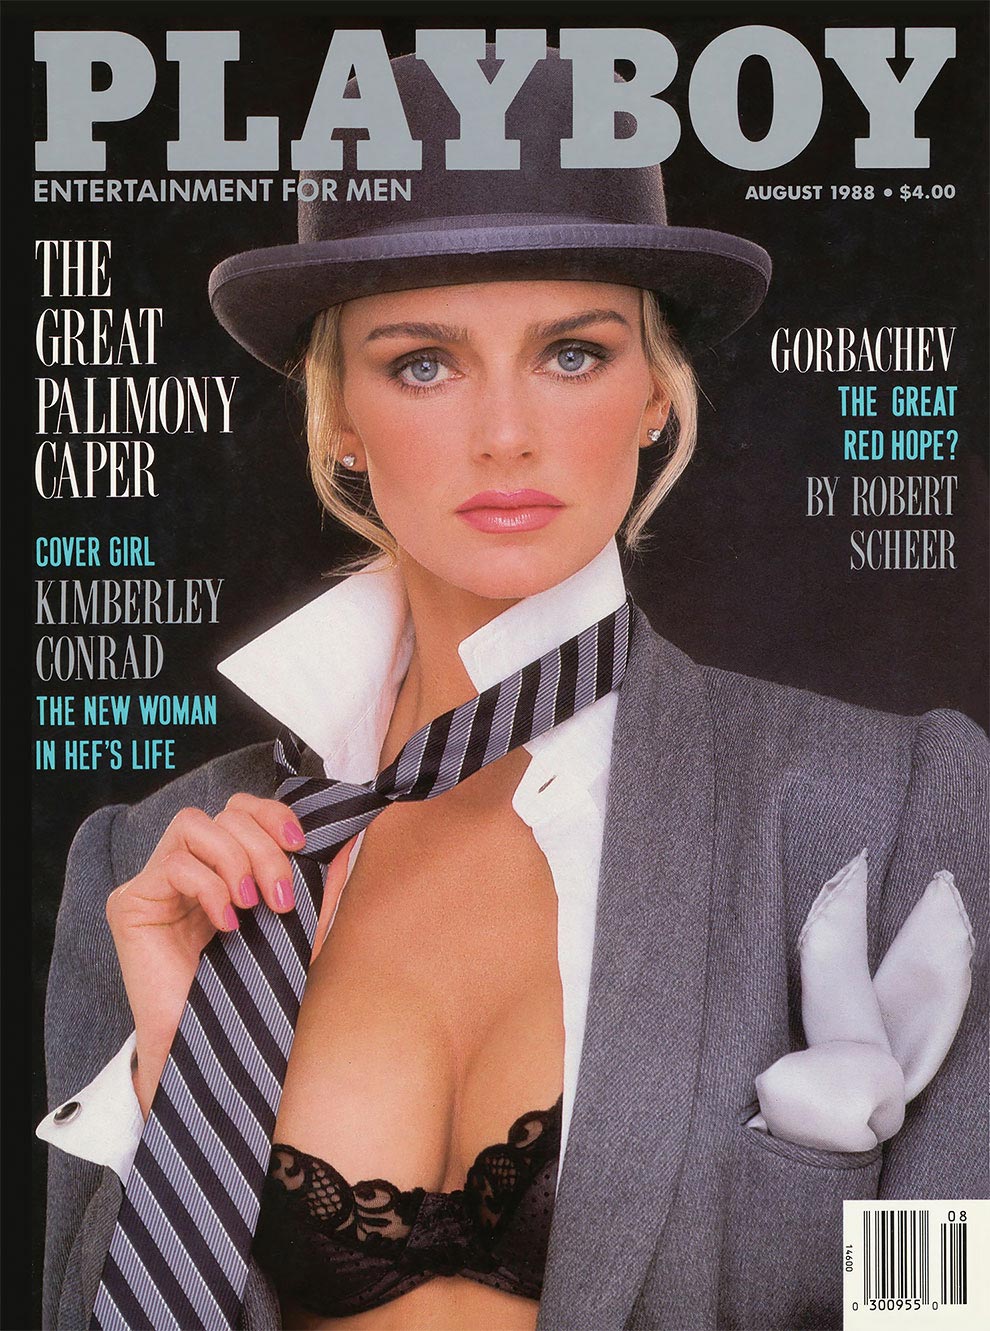 7 бывших моделей журнала Playboy вернулись спустя почти 40 лет, чтобы повто...